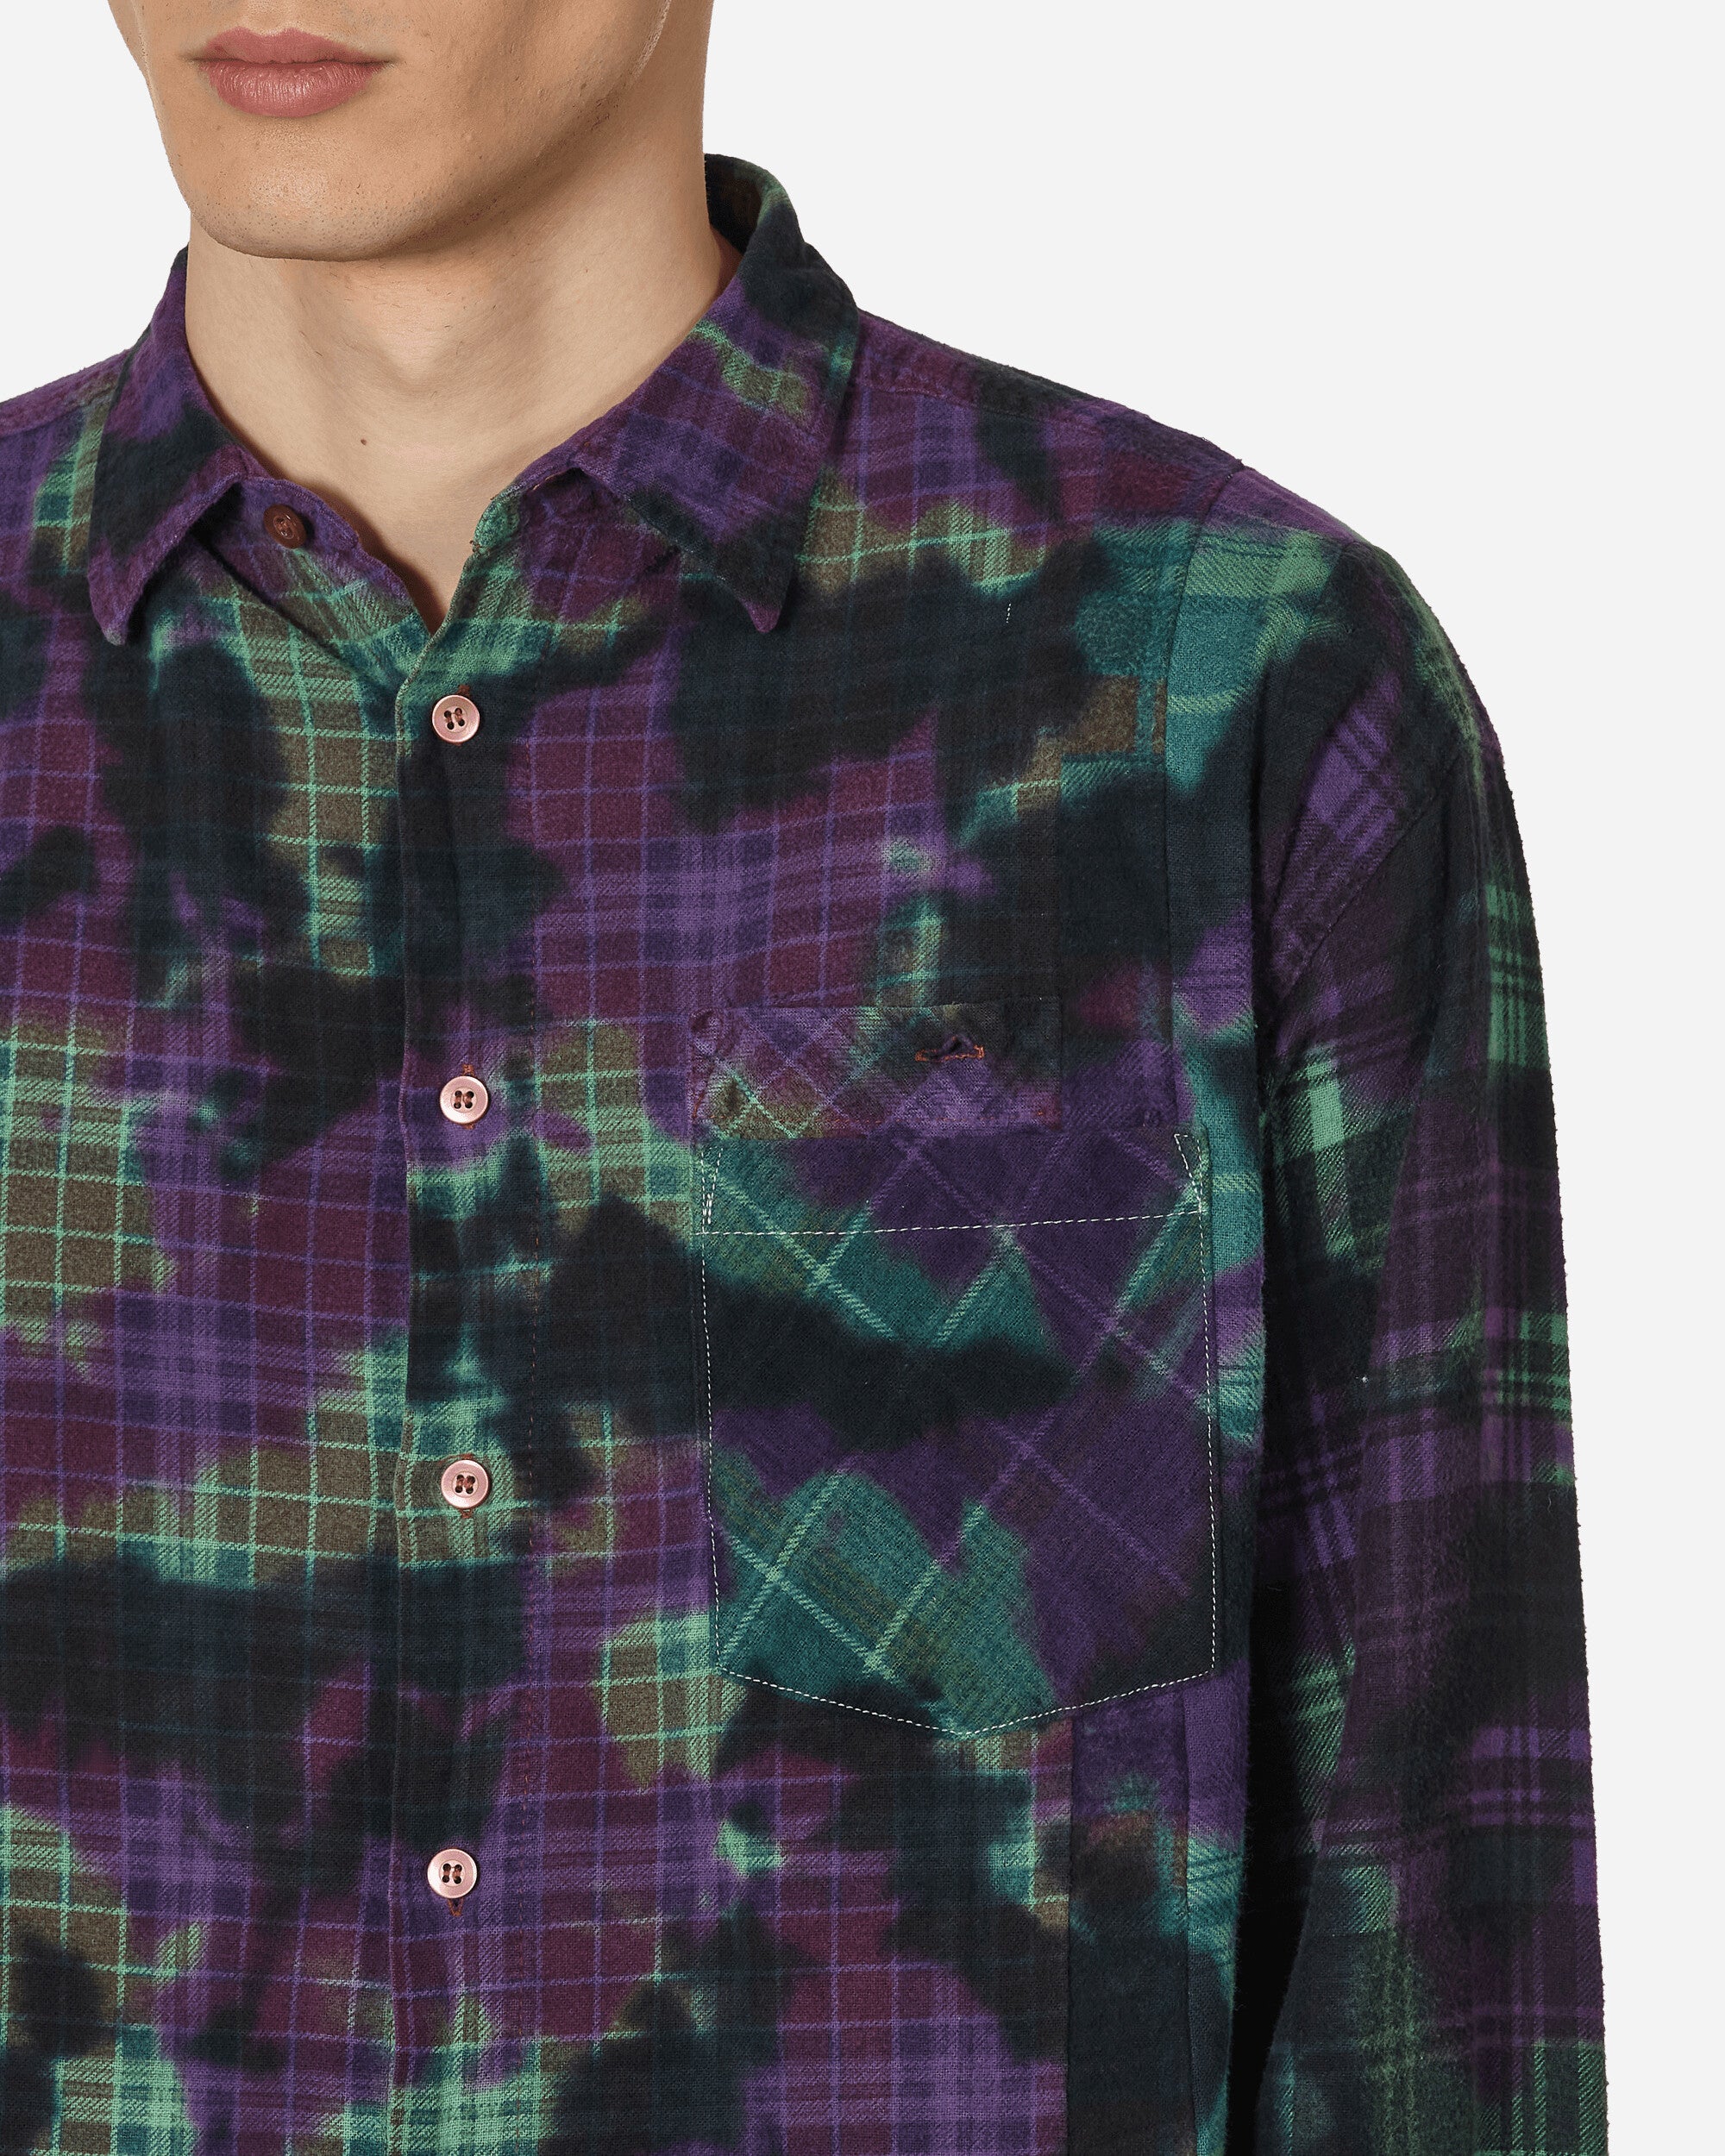 Needles Flannel Shirt - 7 Cuts Wide Shirt / Uneven Dye Assorted Shirts Longsleeve Shirt MR350 1010